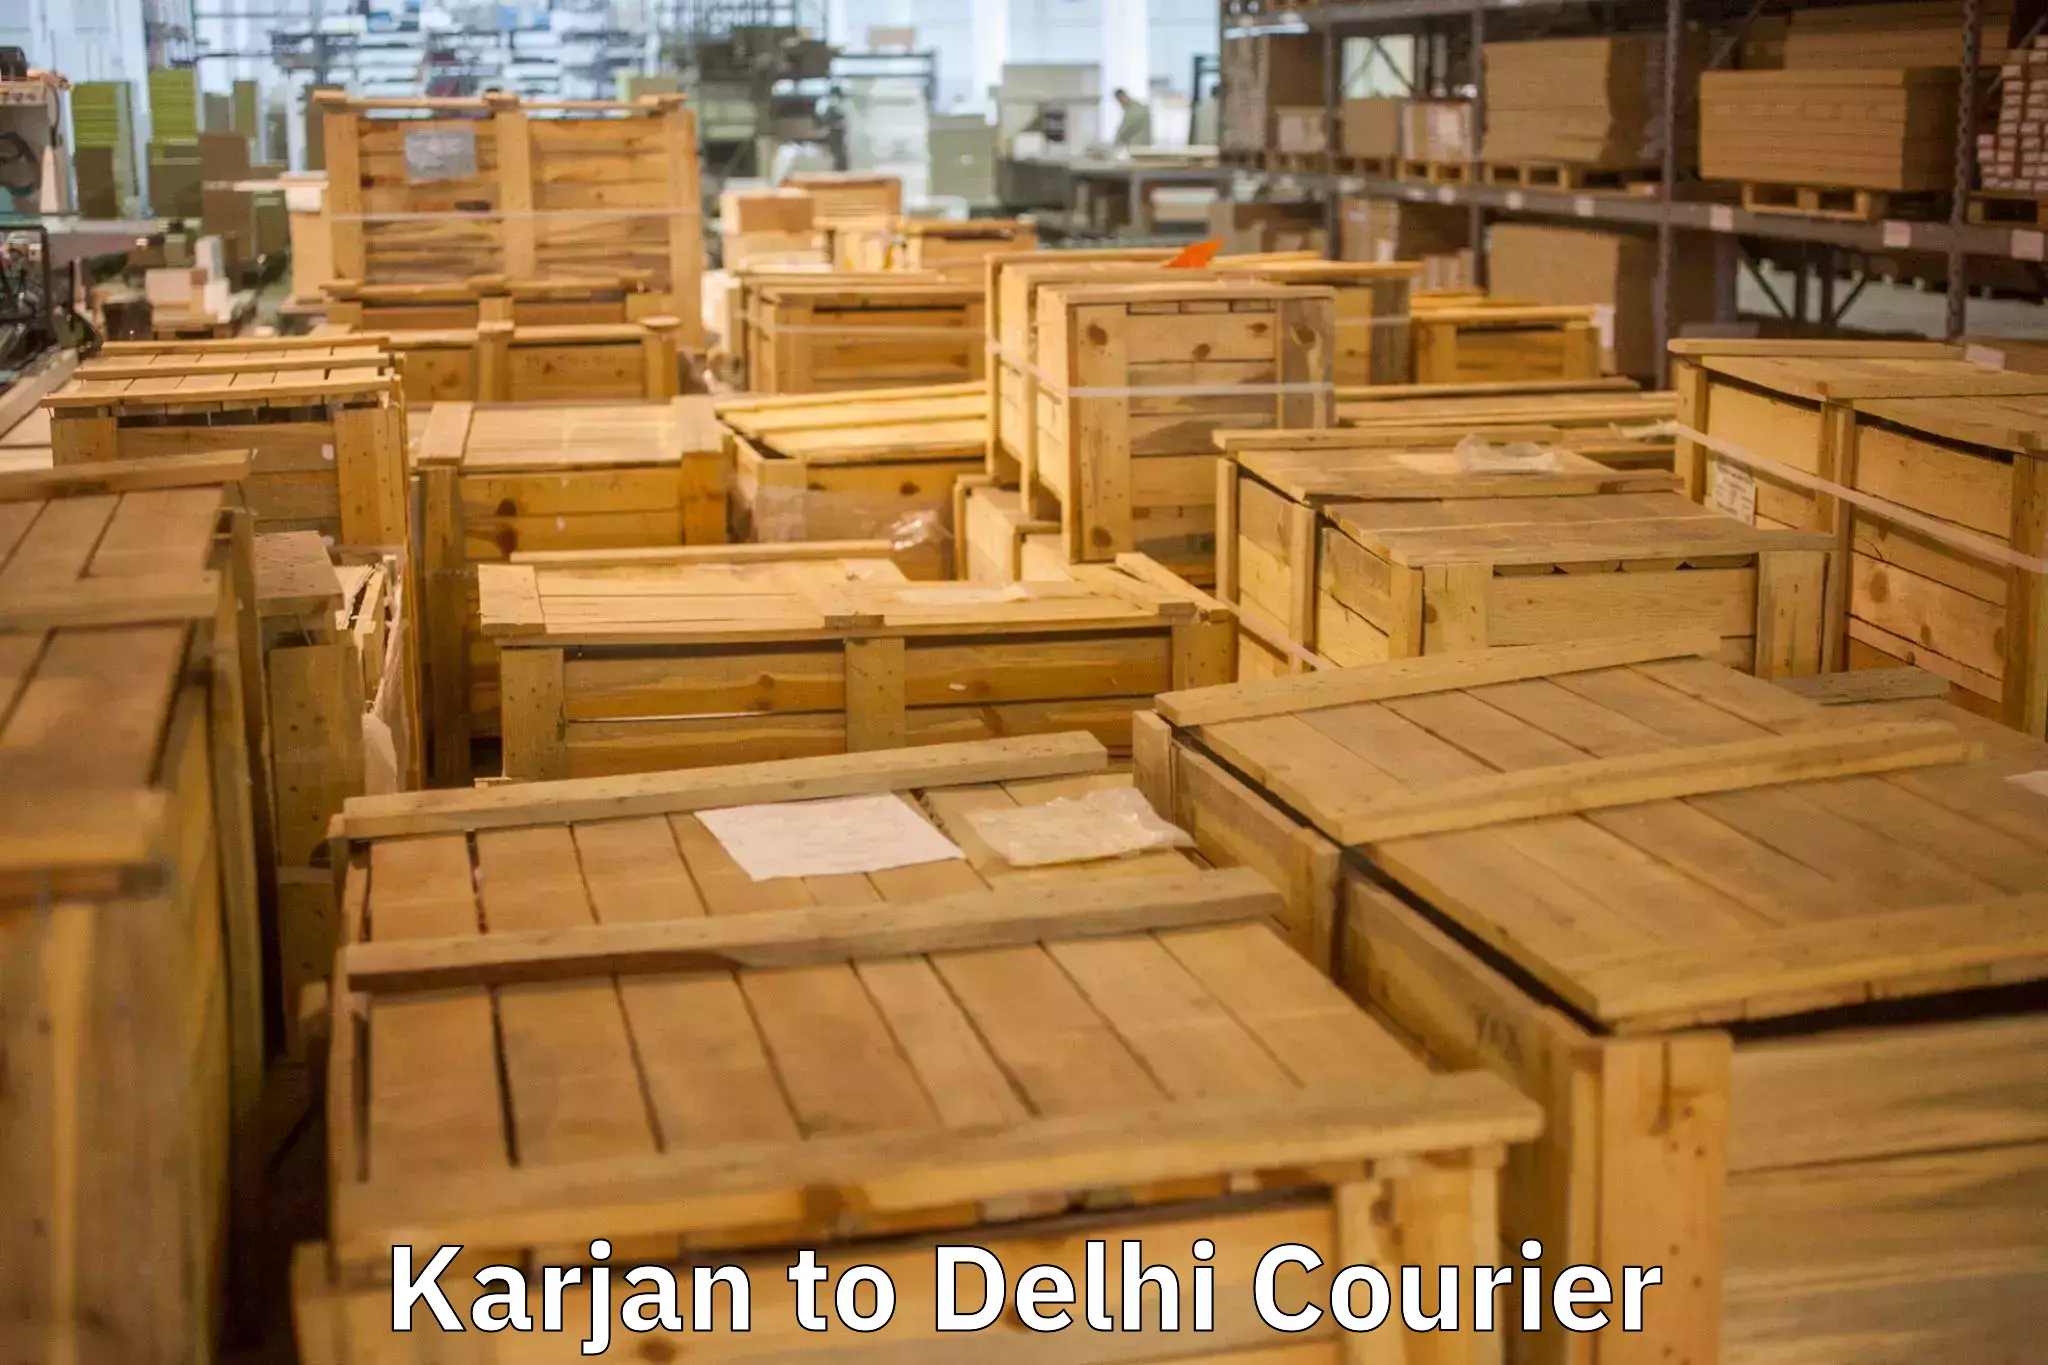 Household transport experts Karjan to University of Delhi